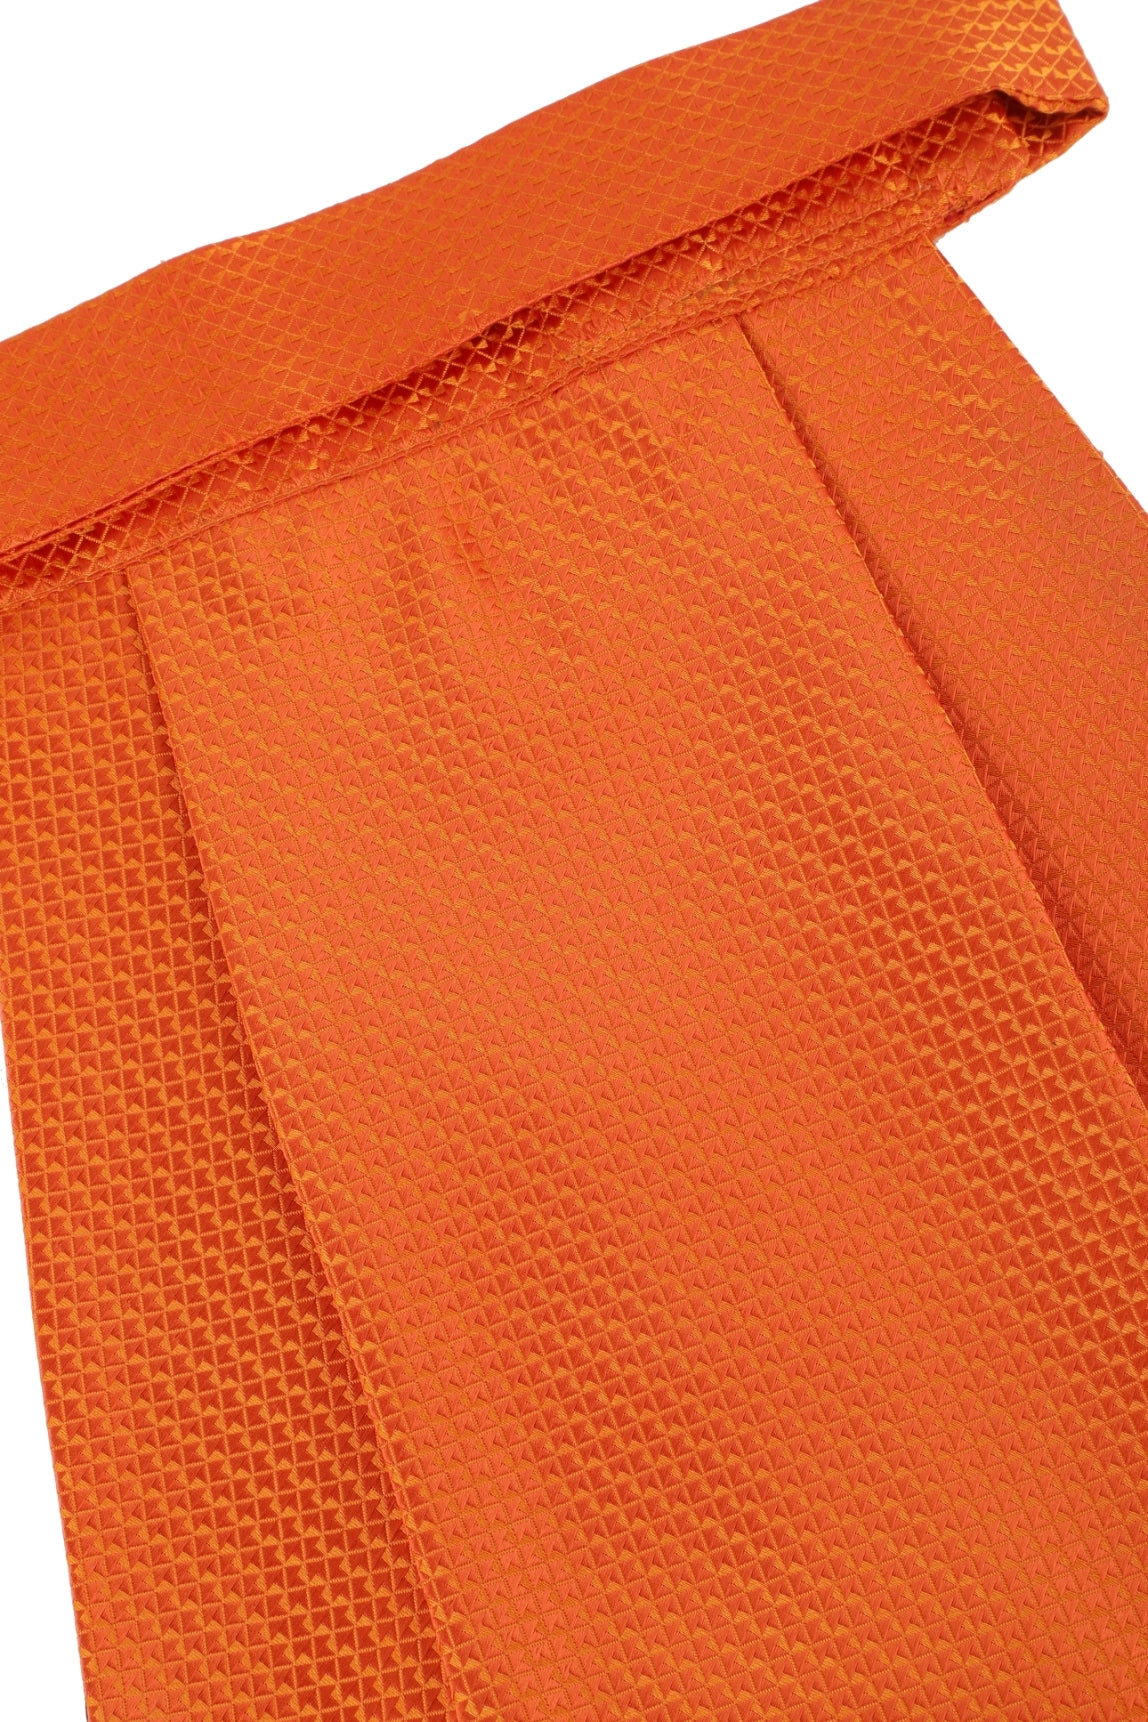 Alvaro Castagnino Men's Orange Color Microfiber Cravat